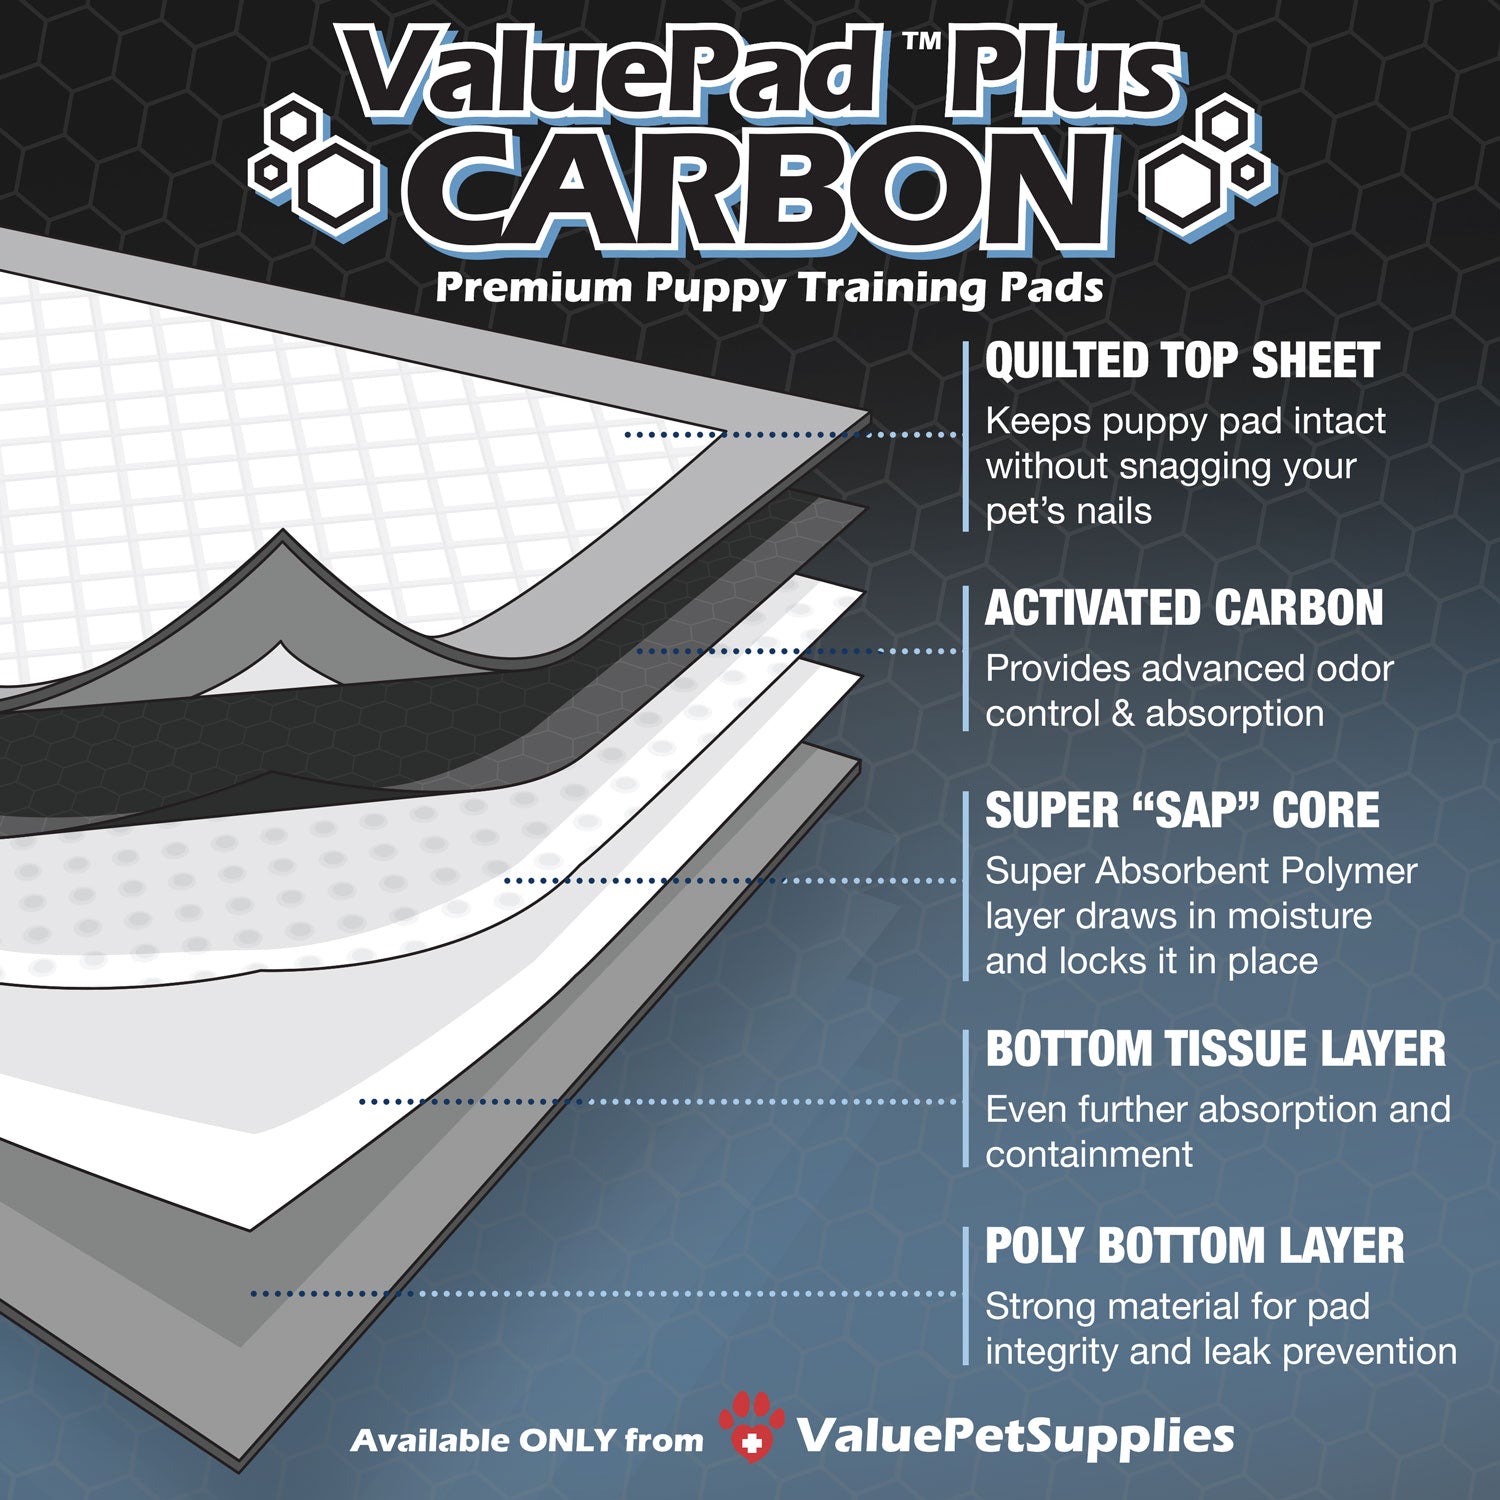 ValuePad Plus Carbon Puppy Pads, X-Large 28x36 Inch, 200 Count BULK PACK